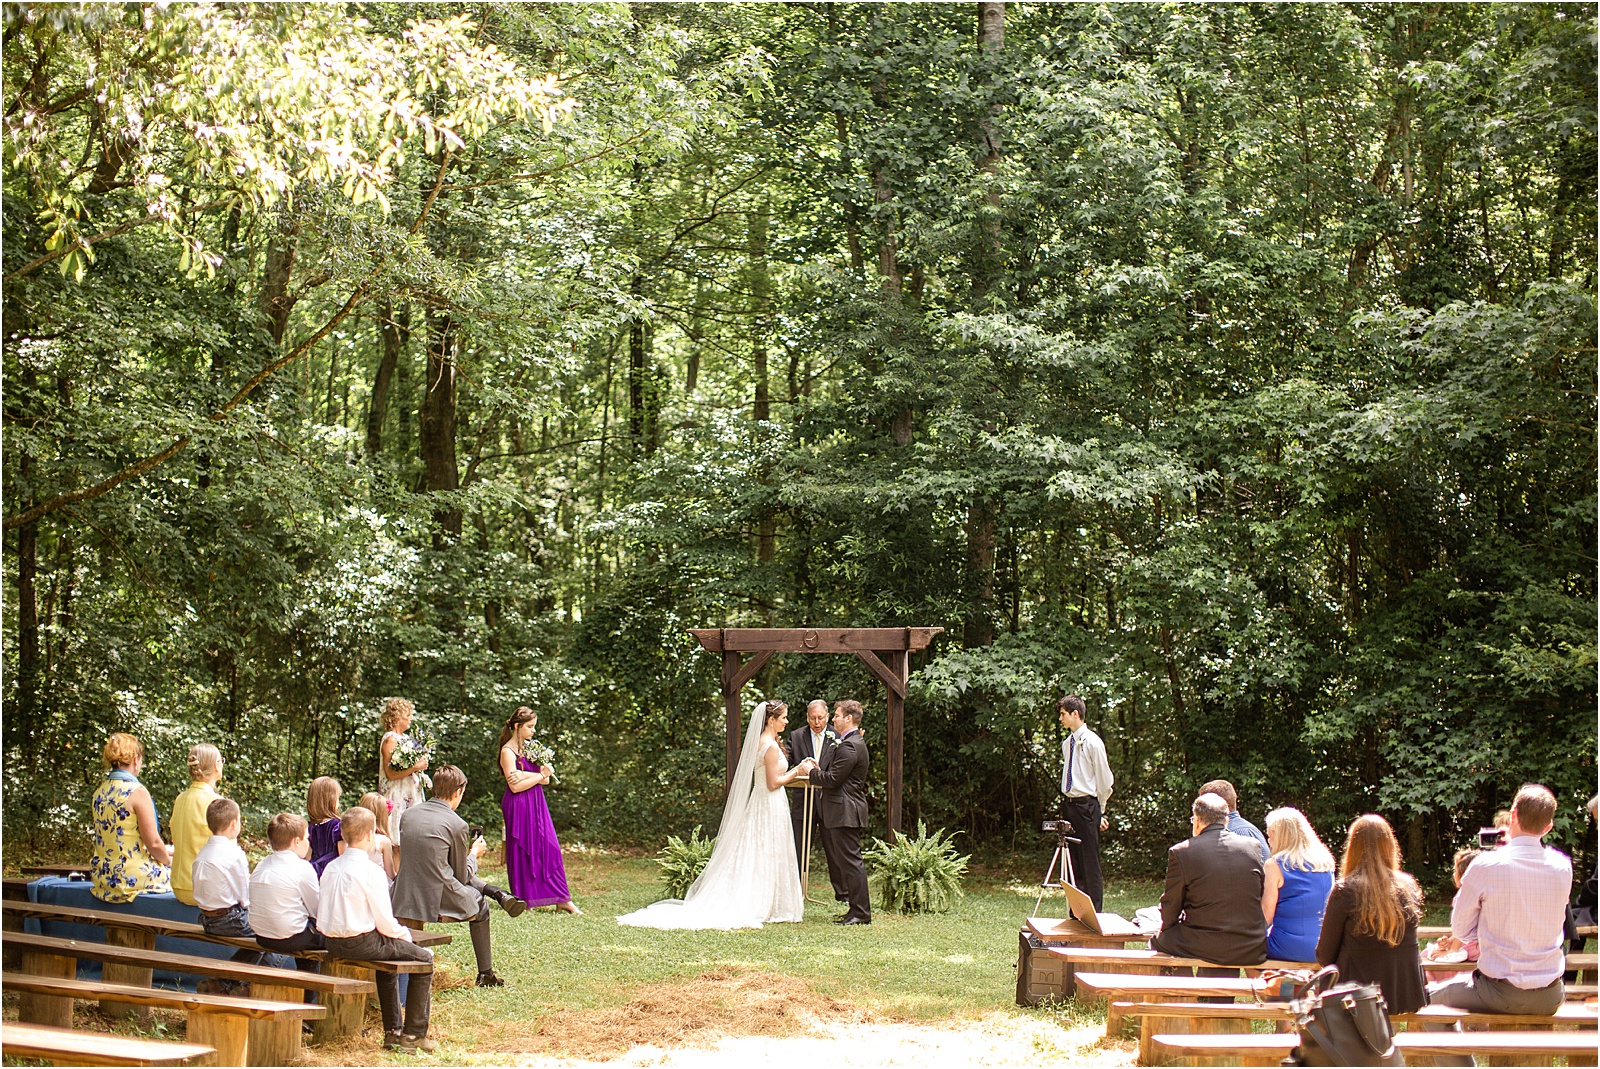 Wedding in Easley woods